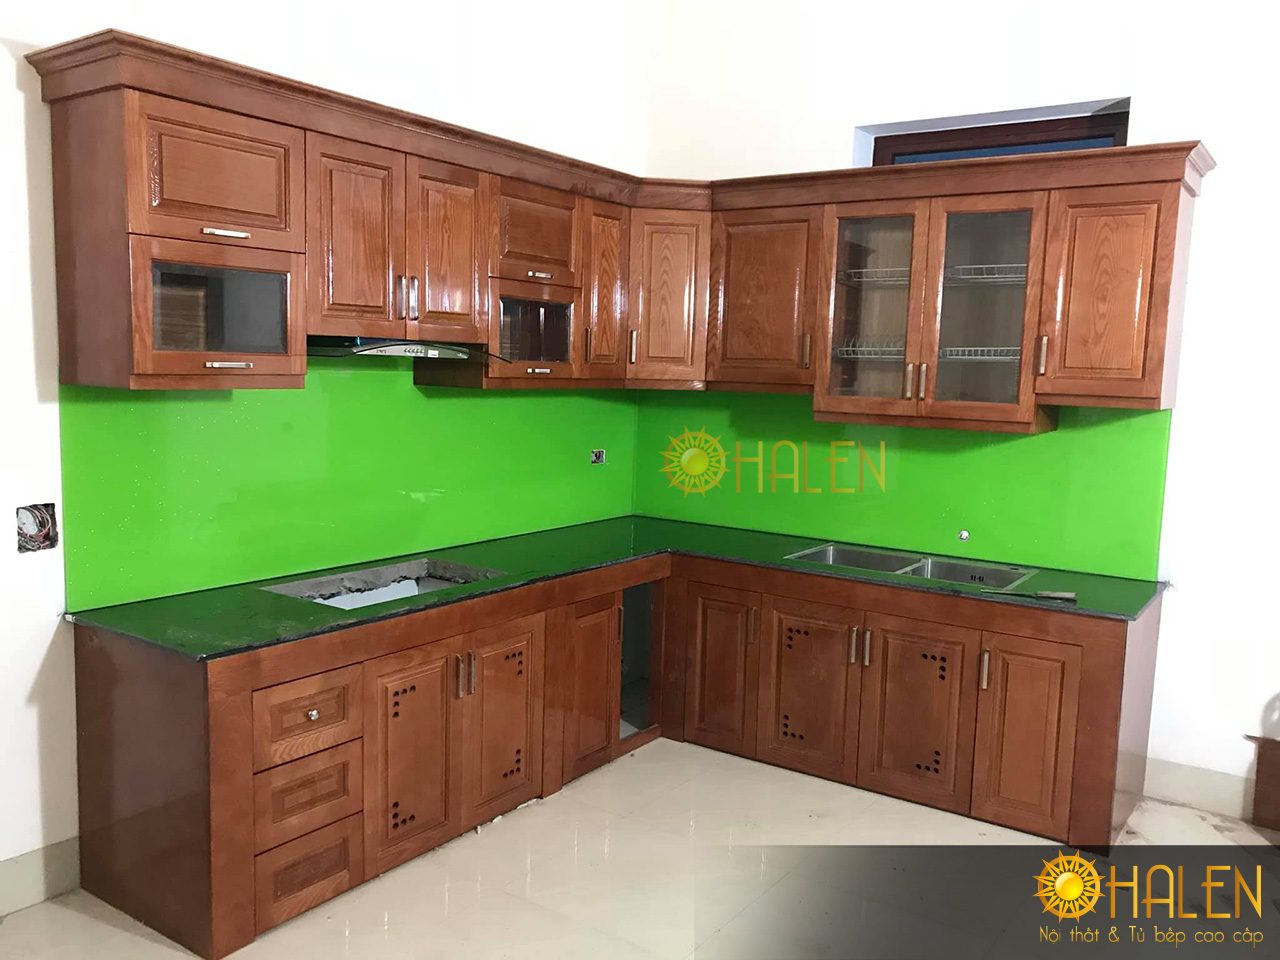 Tủ bếp gỗ xoan đào kết hợp kính bếp màu xanh lá cây .OHALEN thi công tại Thanh Trì -HN , gia đình chú Biên